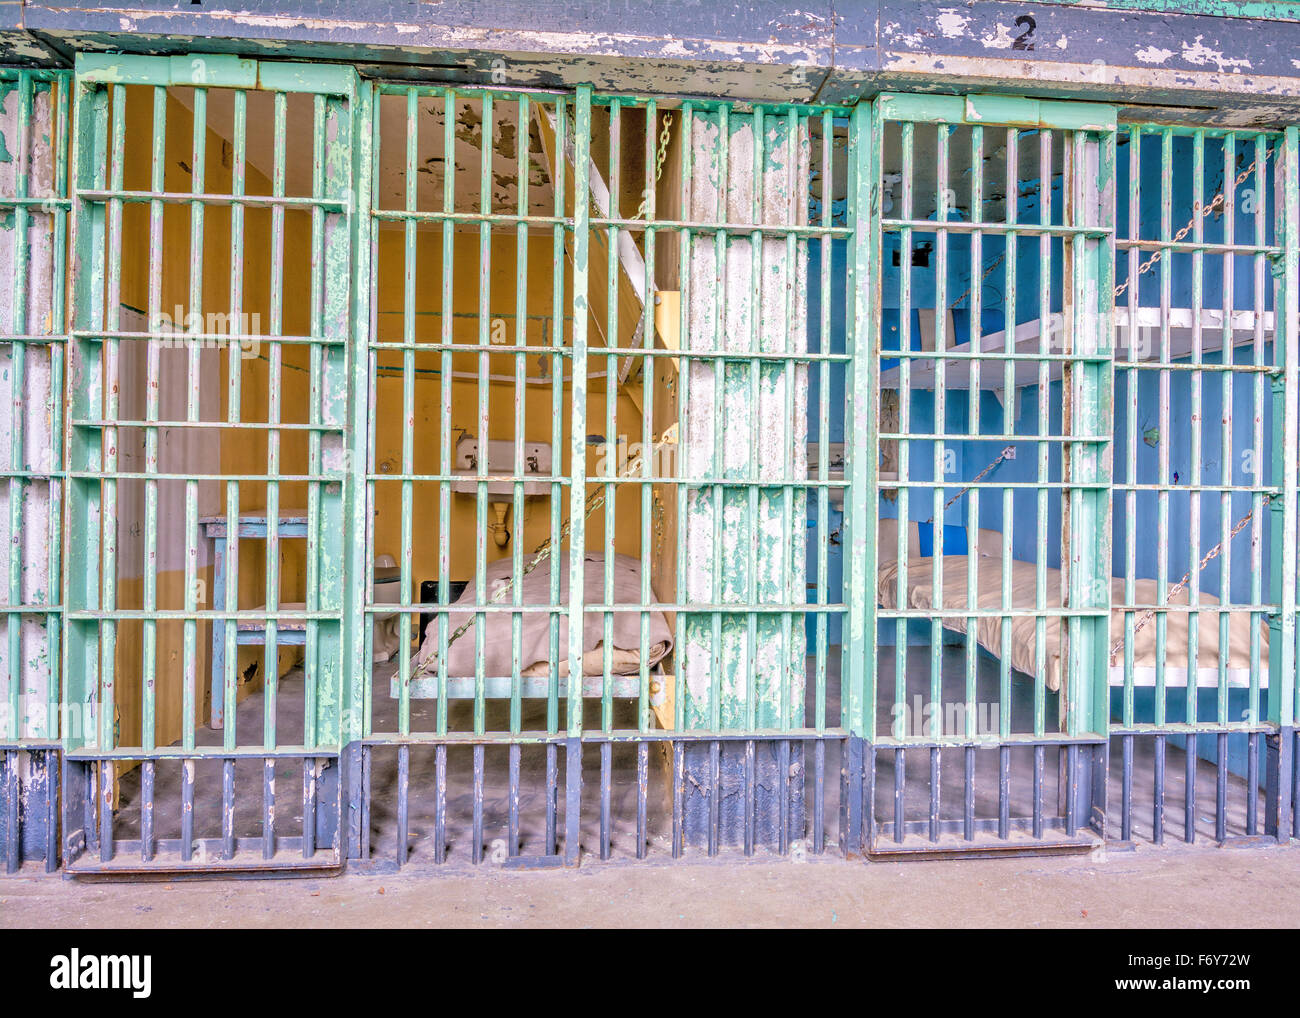 Celda de la prisión con literas Foto de stock